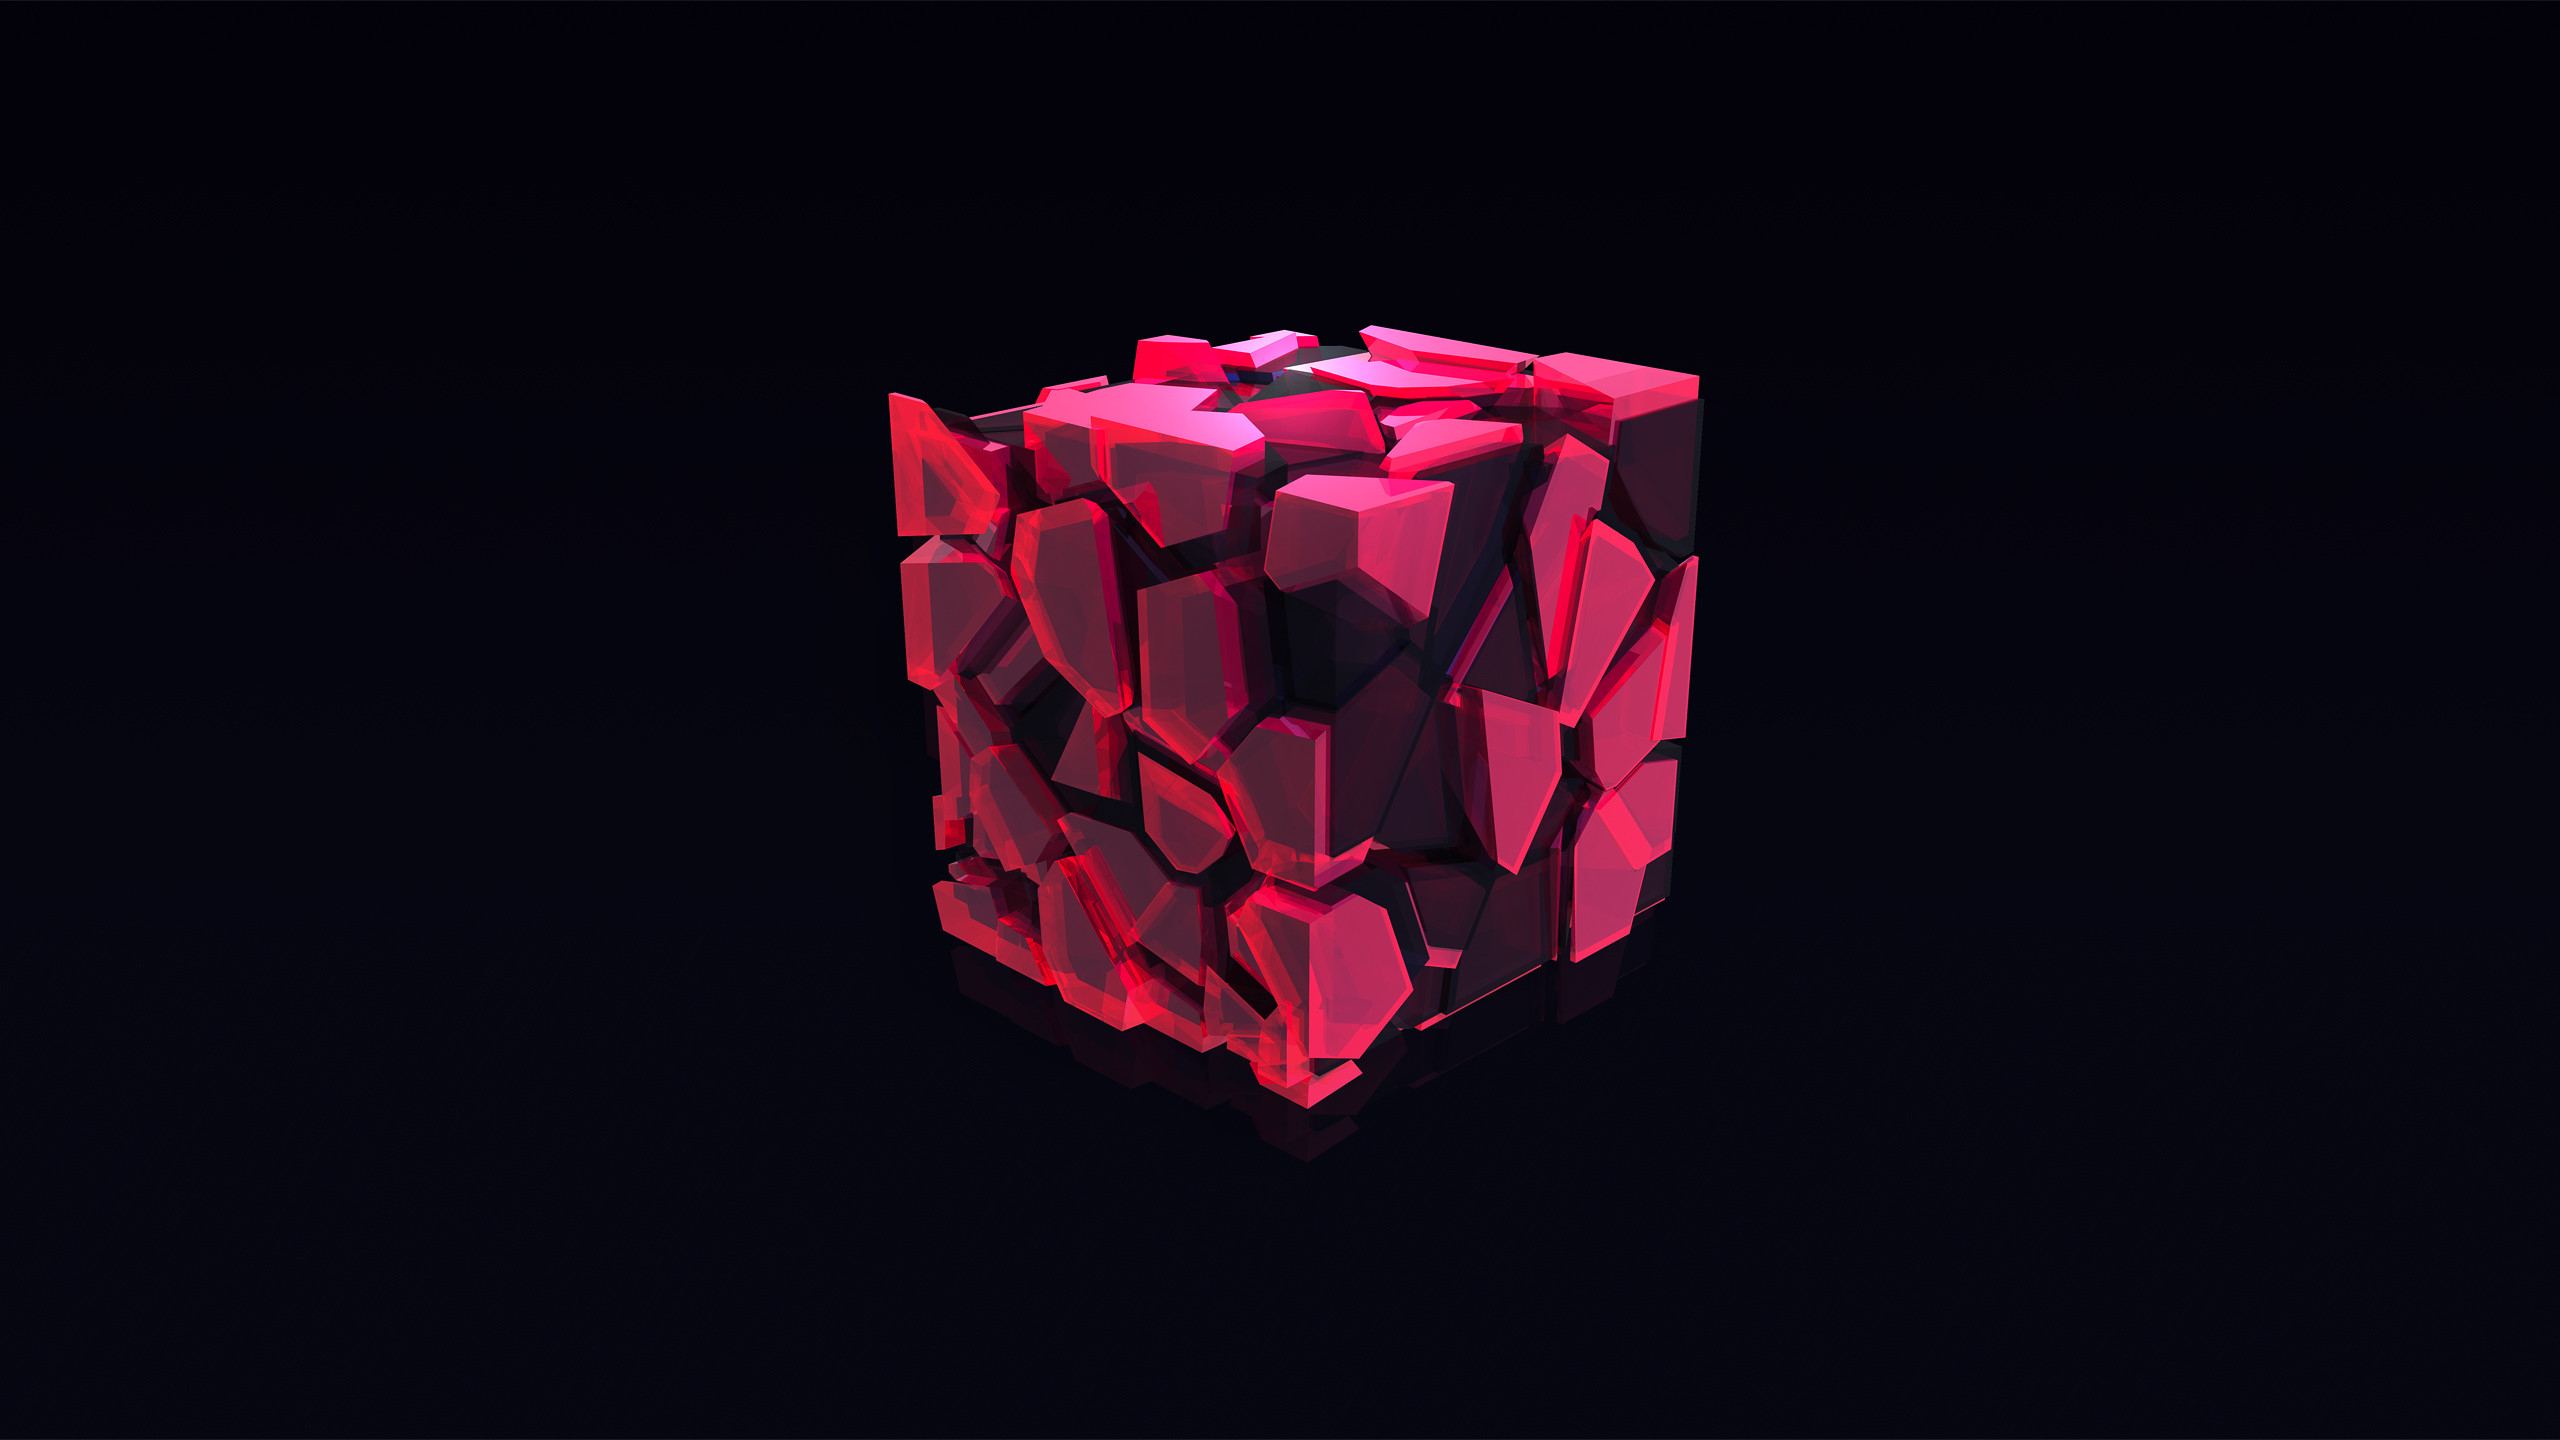 Fondos de pantalla Abstract 3D cube